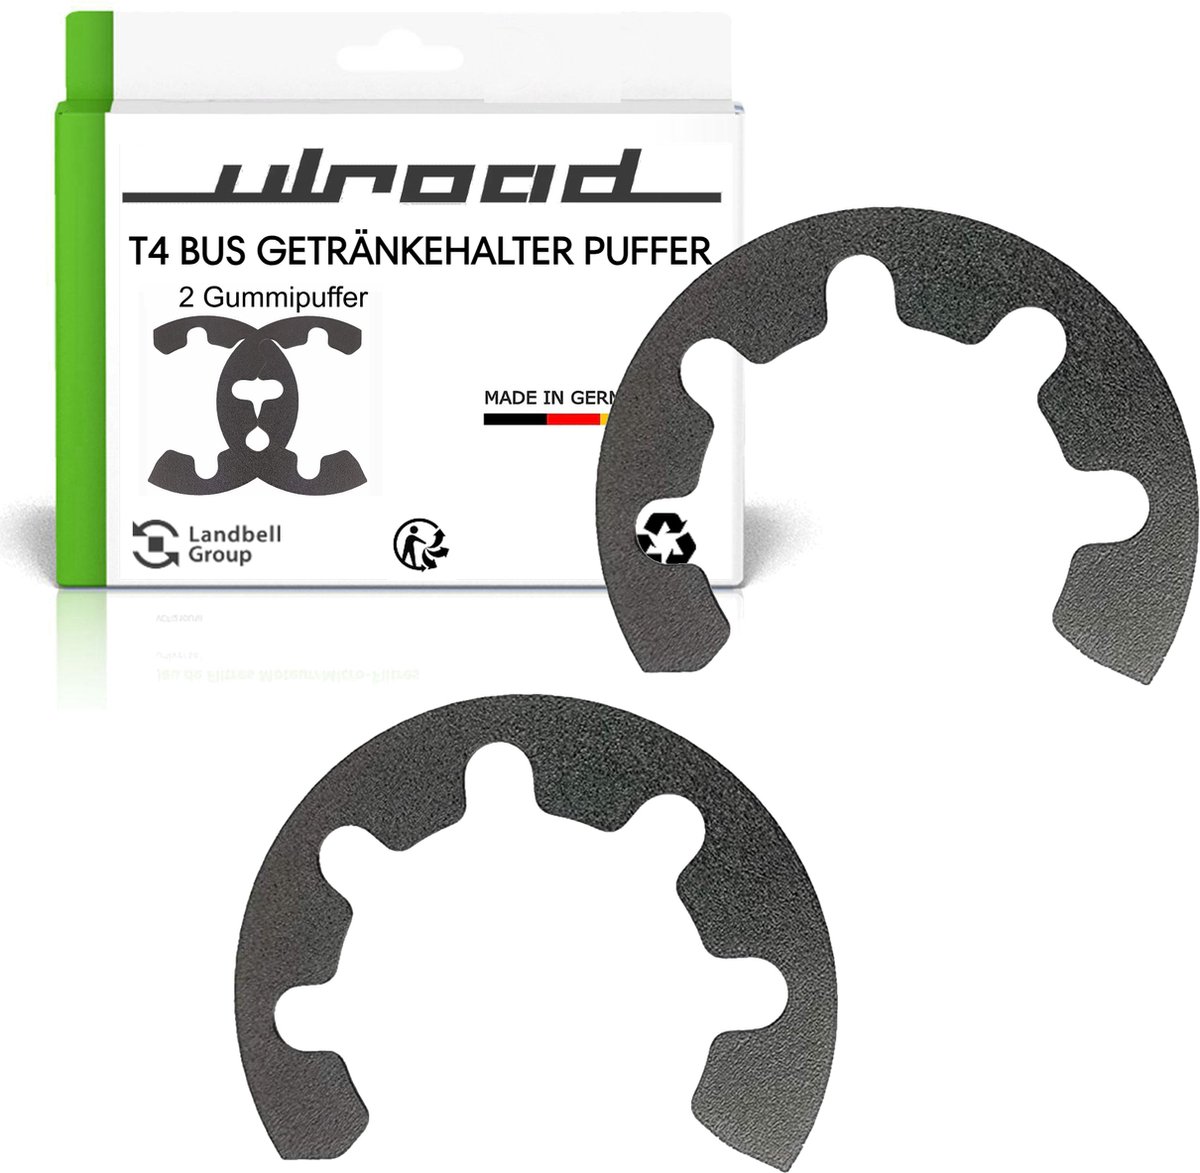 ULROAD Reserve-onderdelen rubber voor bekerhouder, geschikt voor VW T4 Bulli-Passat 35i rubber geschikt voor VW T4 bus accessoires.